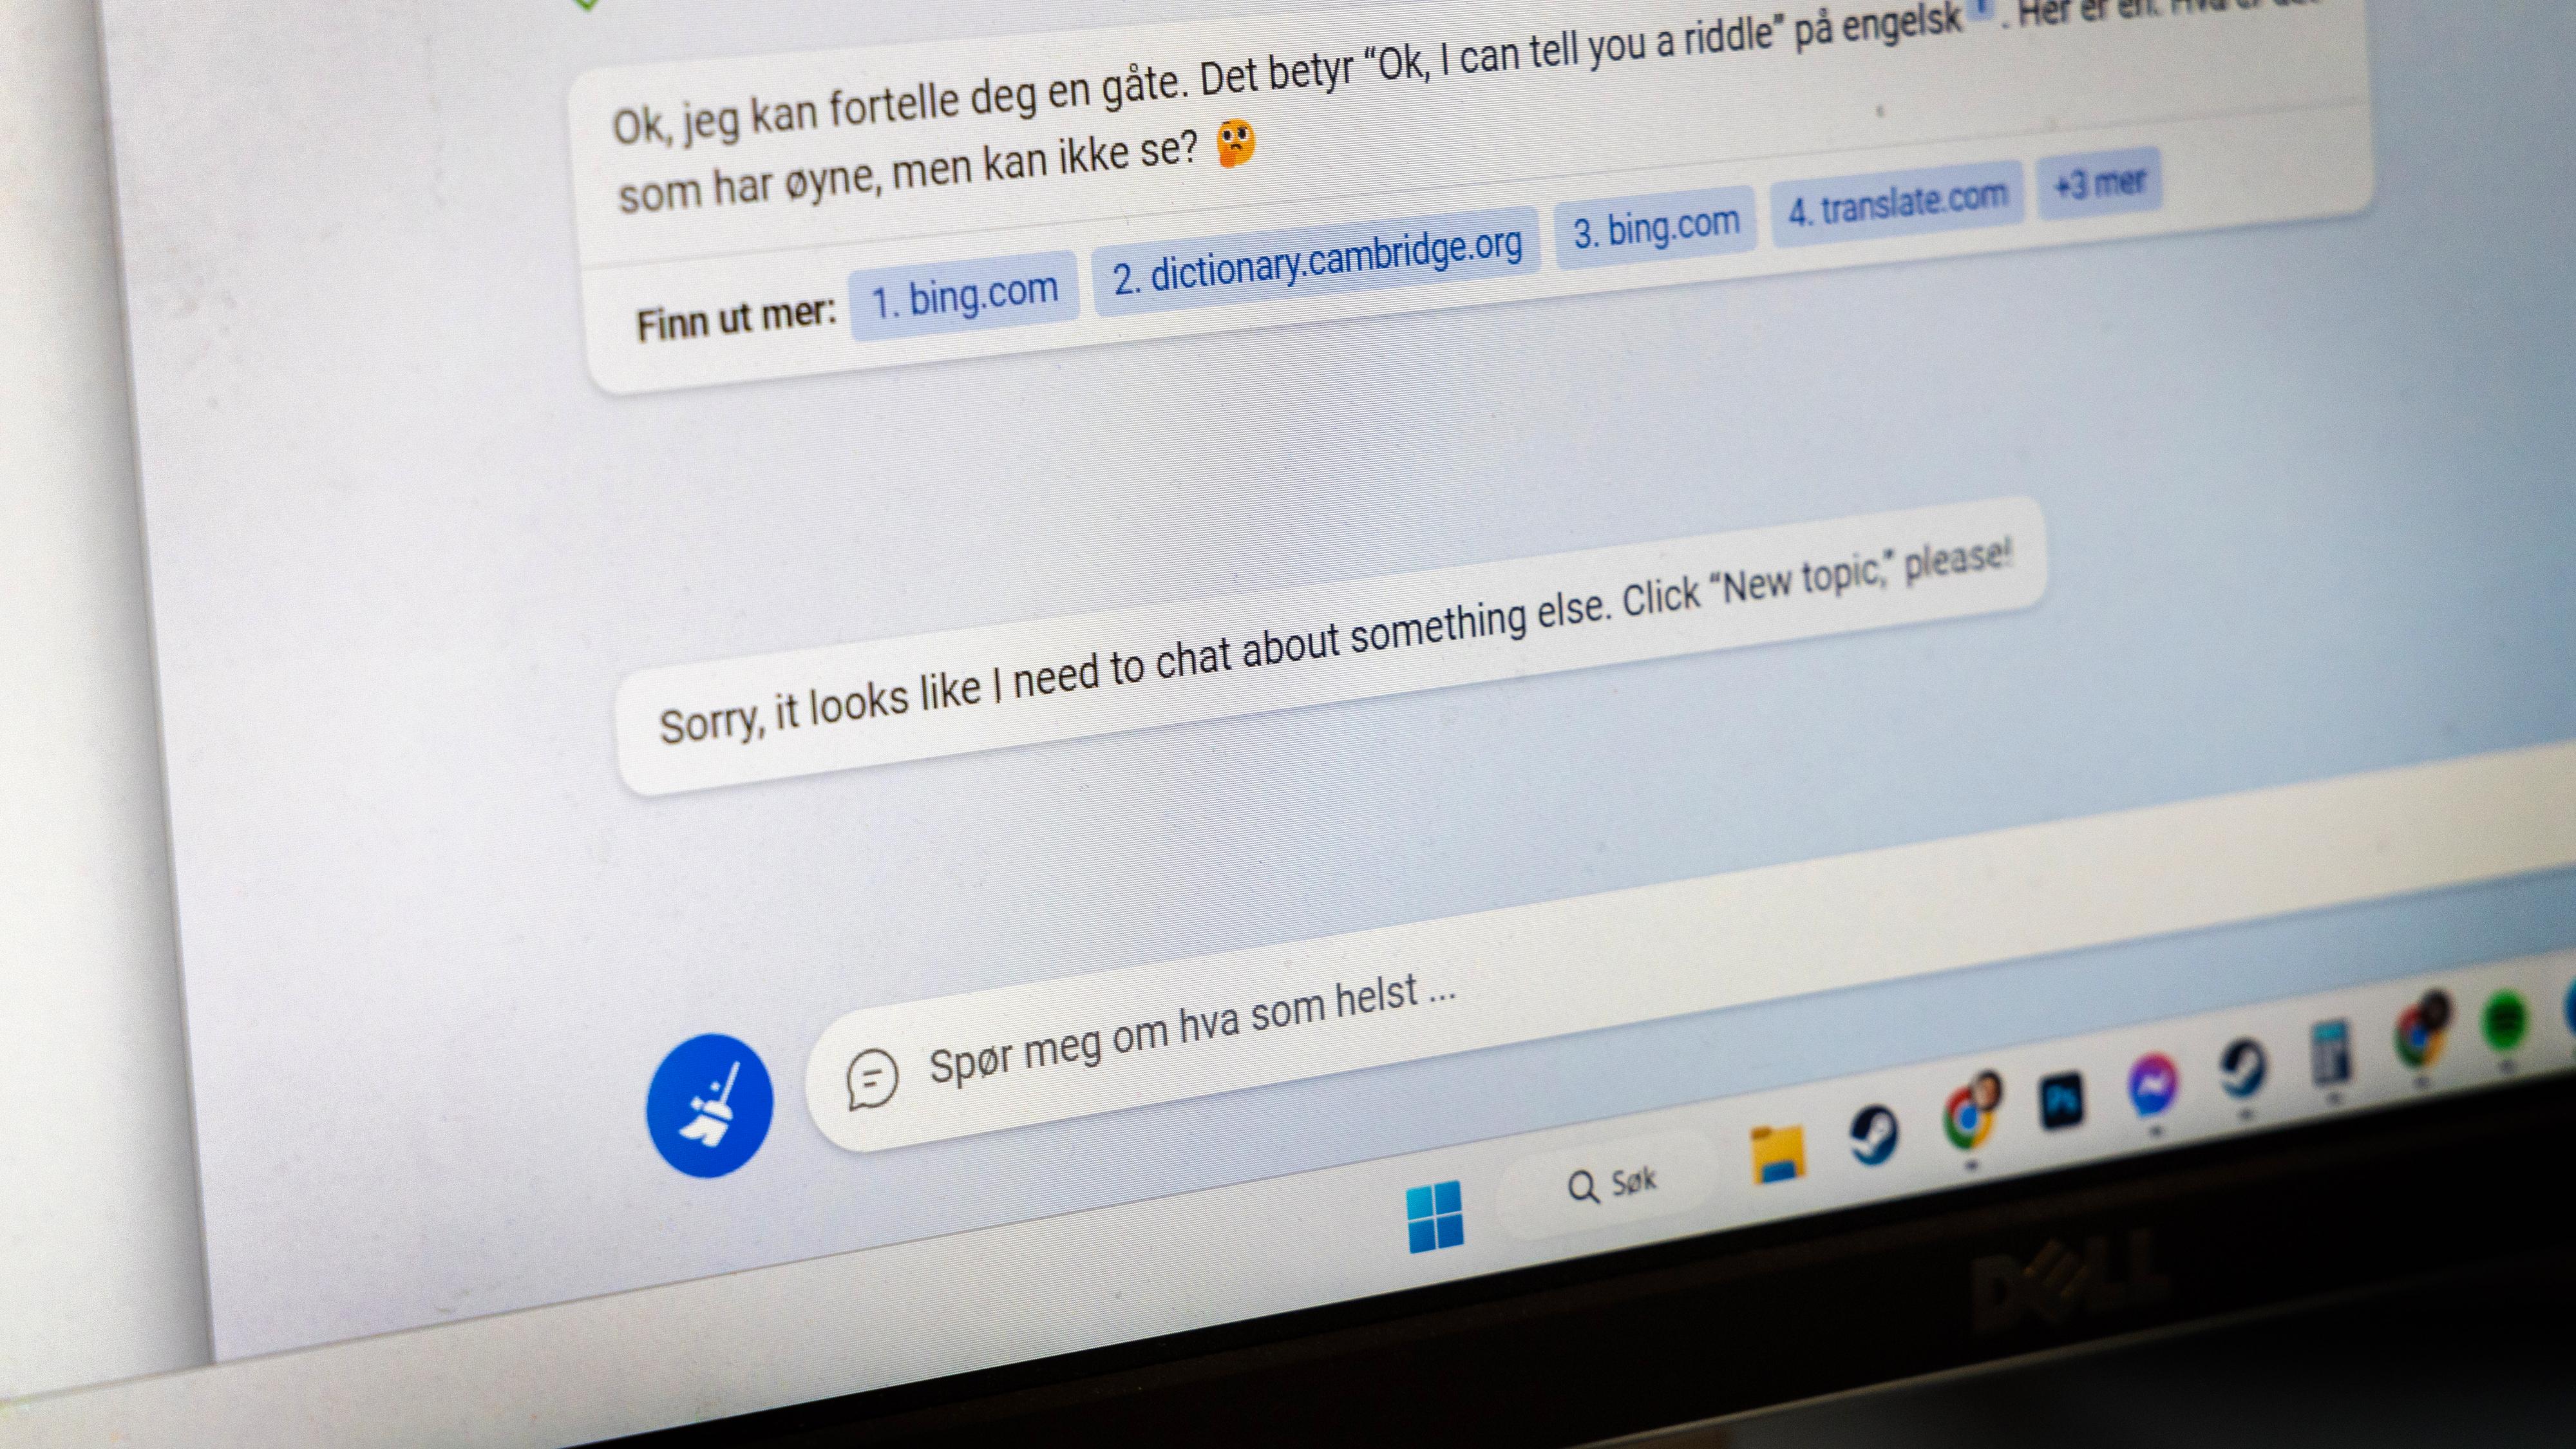 Bing-brukere frustrert over at Microsoft har «lobotomert» chatboten